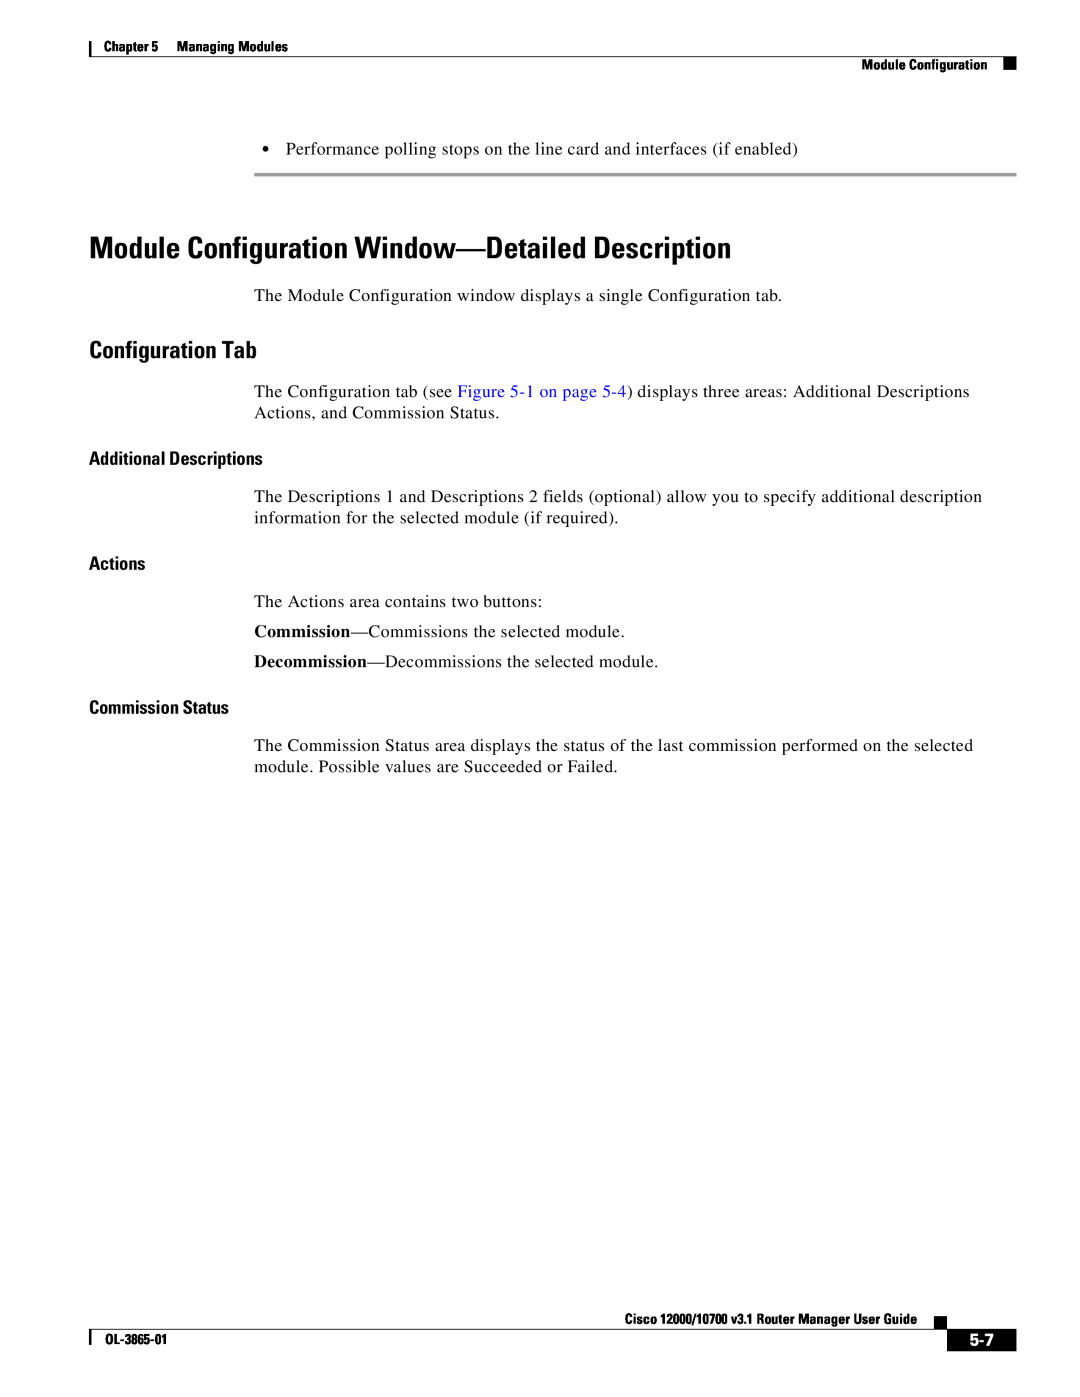 Cisco Systems 10700 Module Configuration Window-Detailed Description, Configuration Tab, Additional Descriptions, Actions 